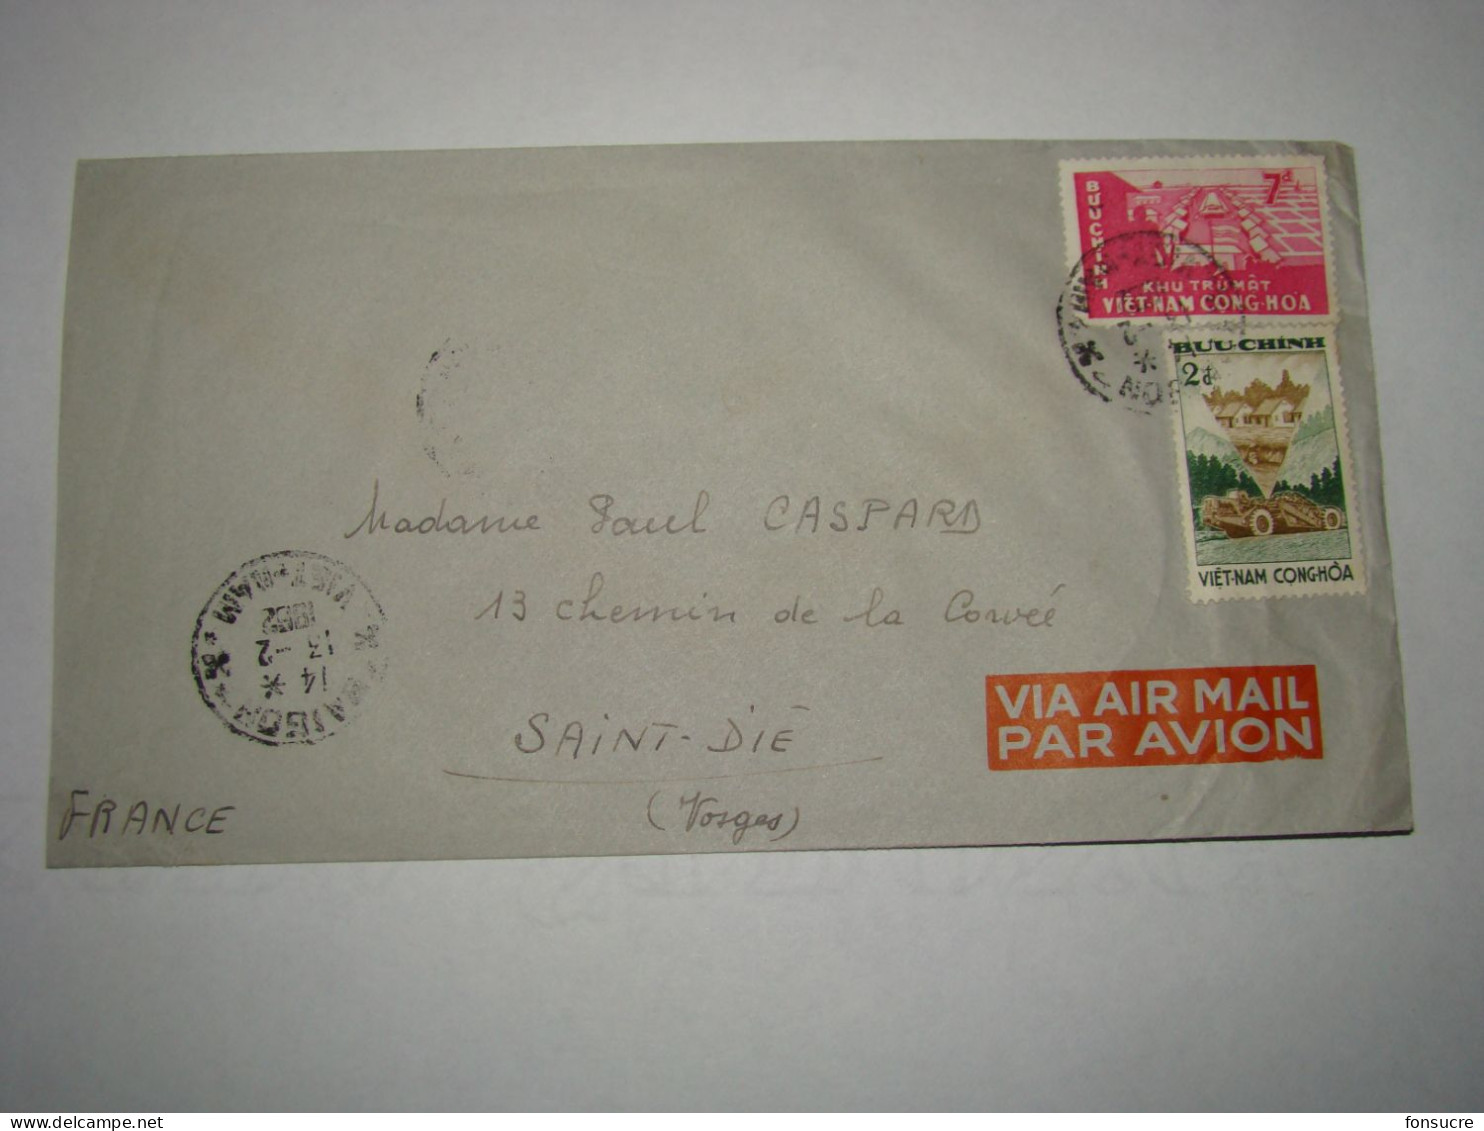 4291 Lettre Par Avion Air Mail Saïgon Viêt-Nam Cong-Hoa Buu-Chinh Pour St Dié Vosges France 13/2/1962 - Vietnam